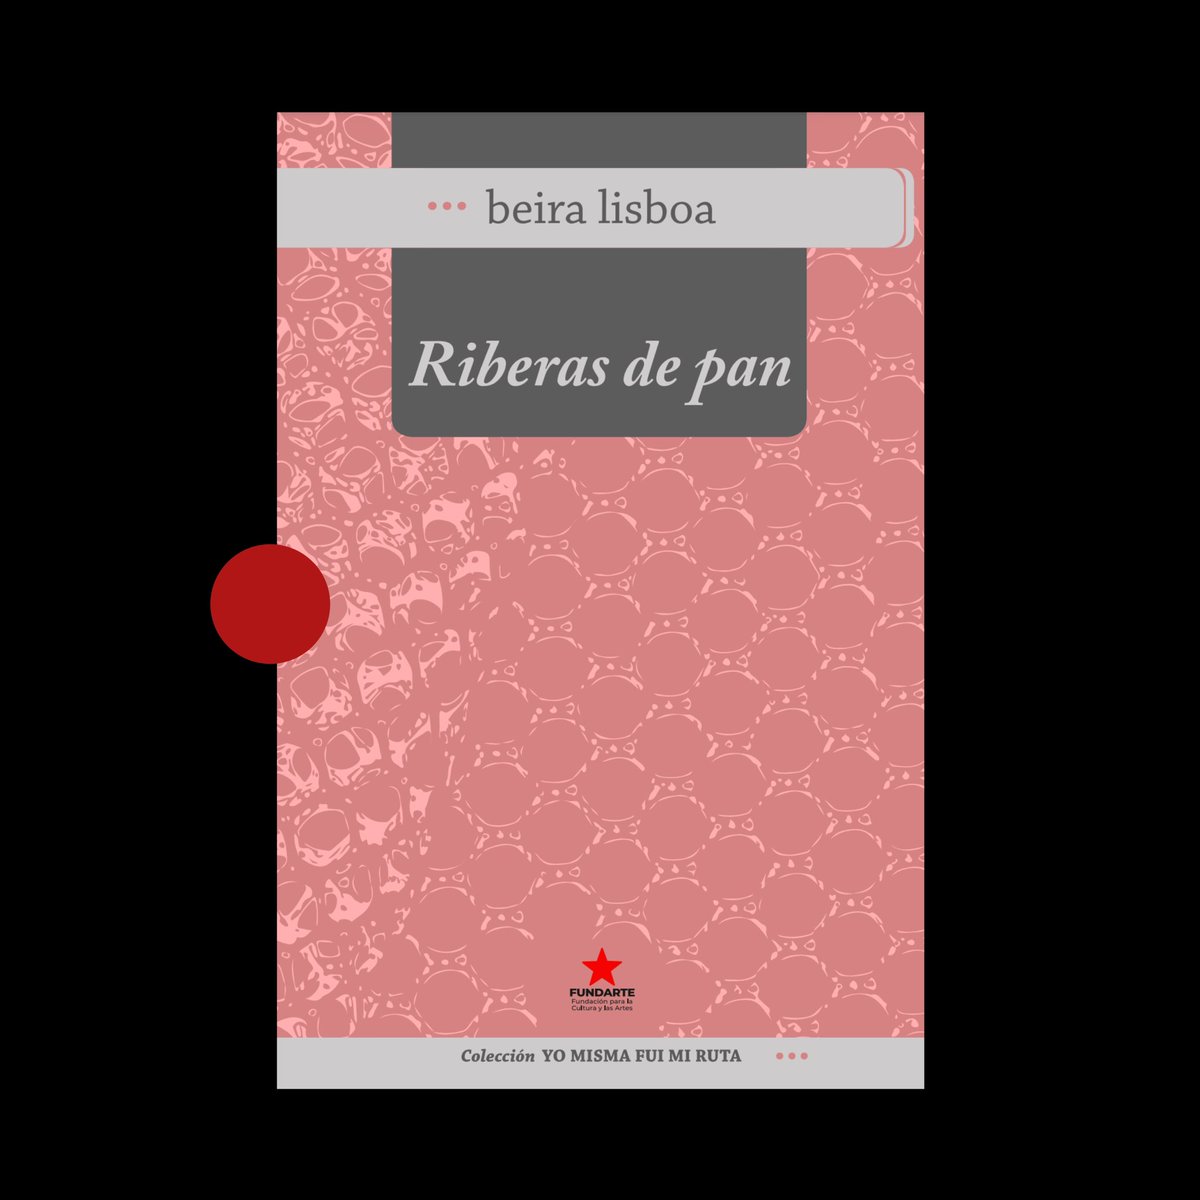 Disponible en @PoetasVEN:

«Riberas de pan» (Fundarte, 2022) de Beira Lisboa.